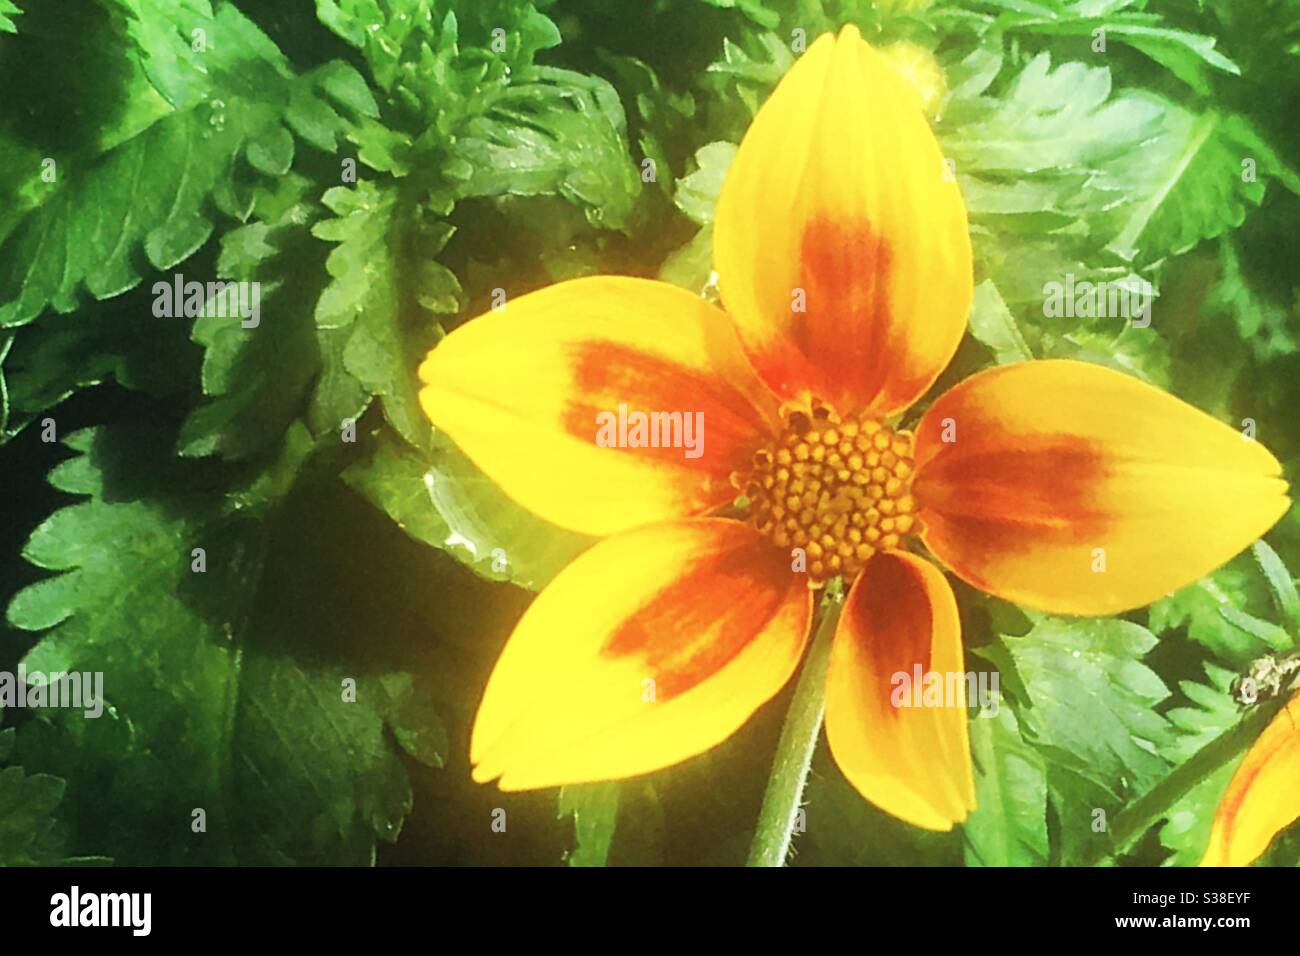 Orange and yellow bidens flower Stock Photo